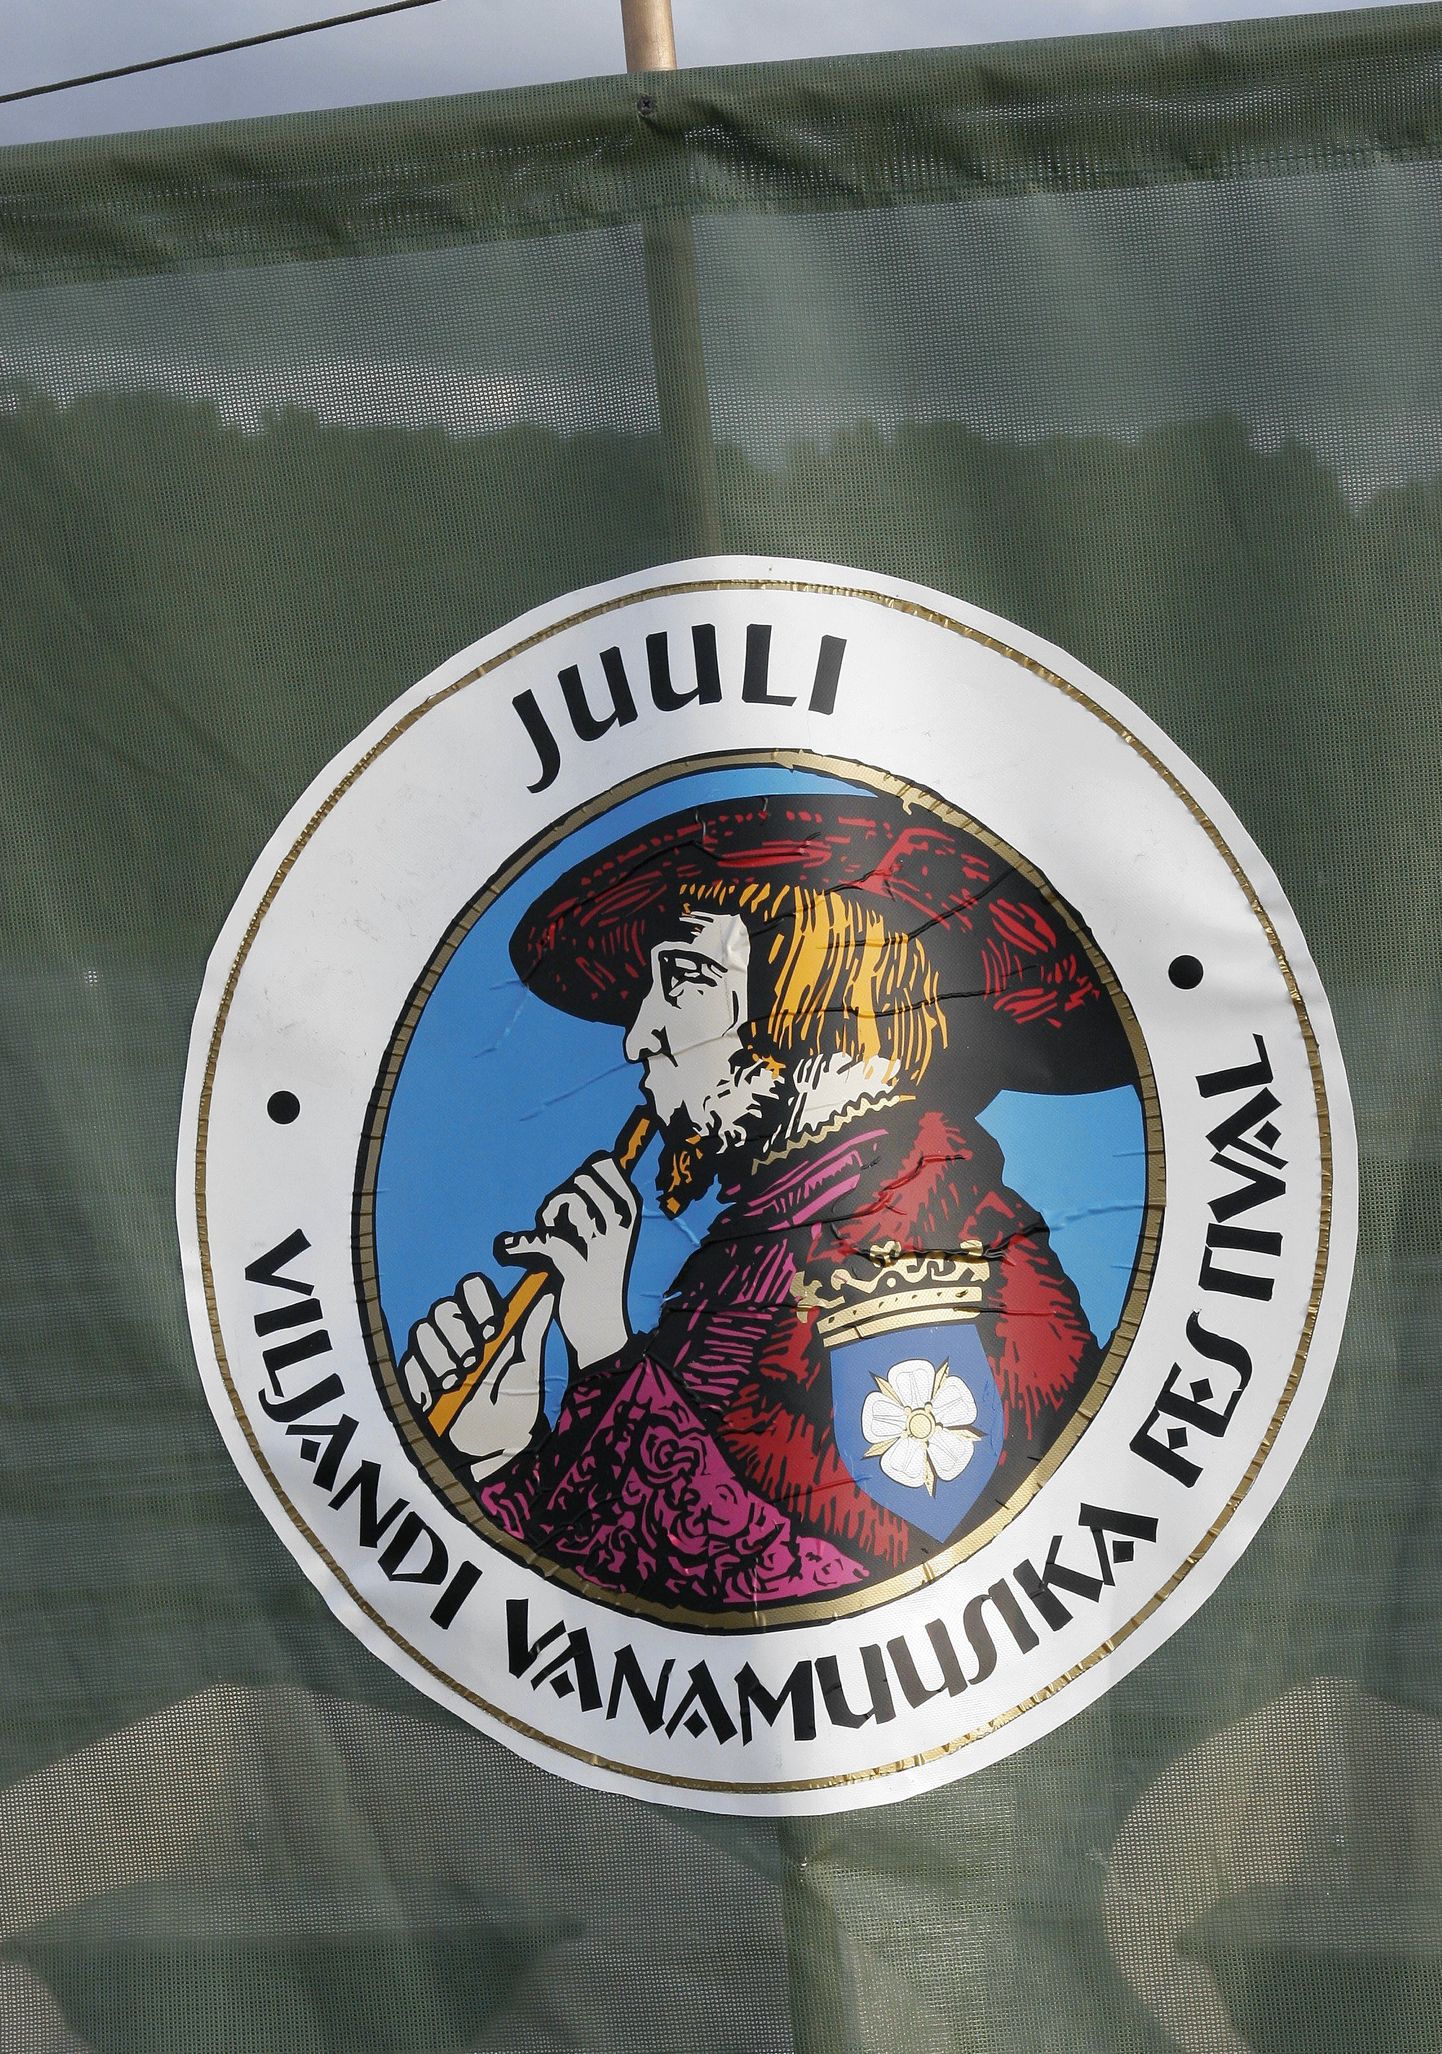 Suurima toetuse pälvis Viljandi vanamuusika festivali noorte vanamuusikute laager ja lavastus Ugala teatris.